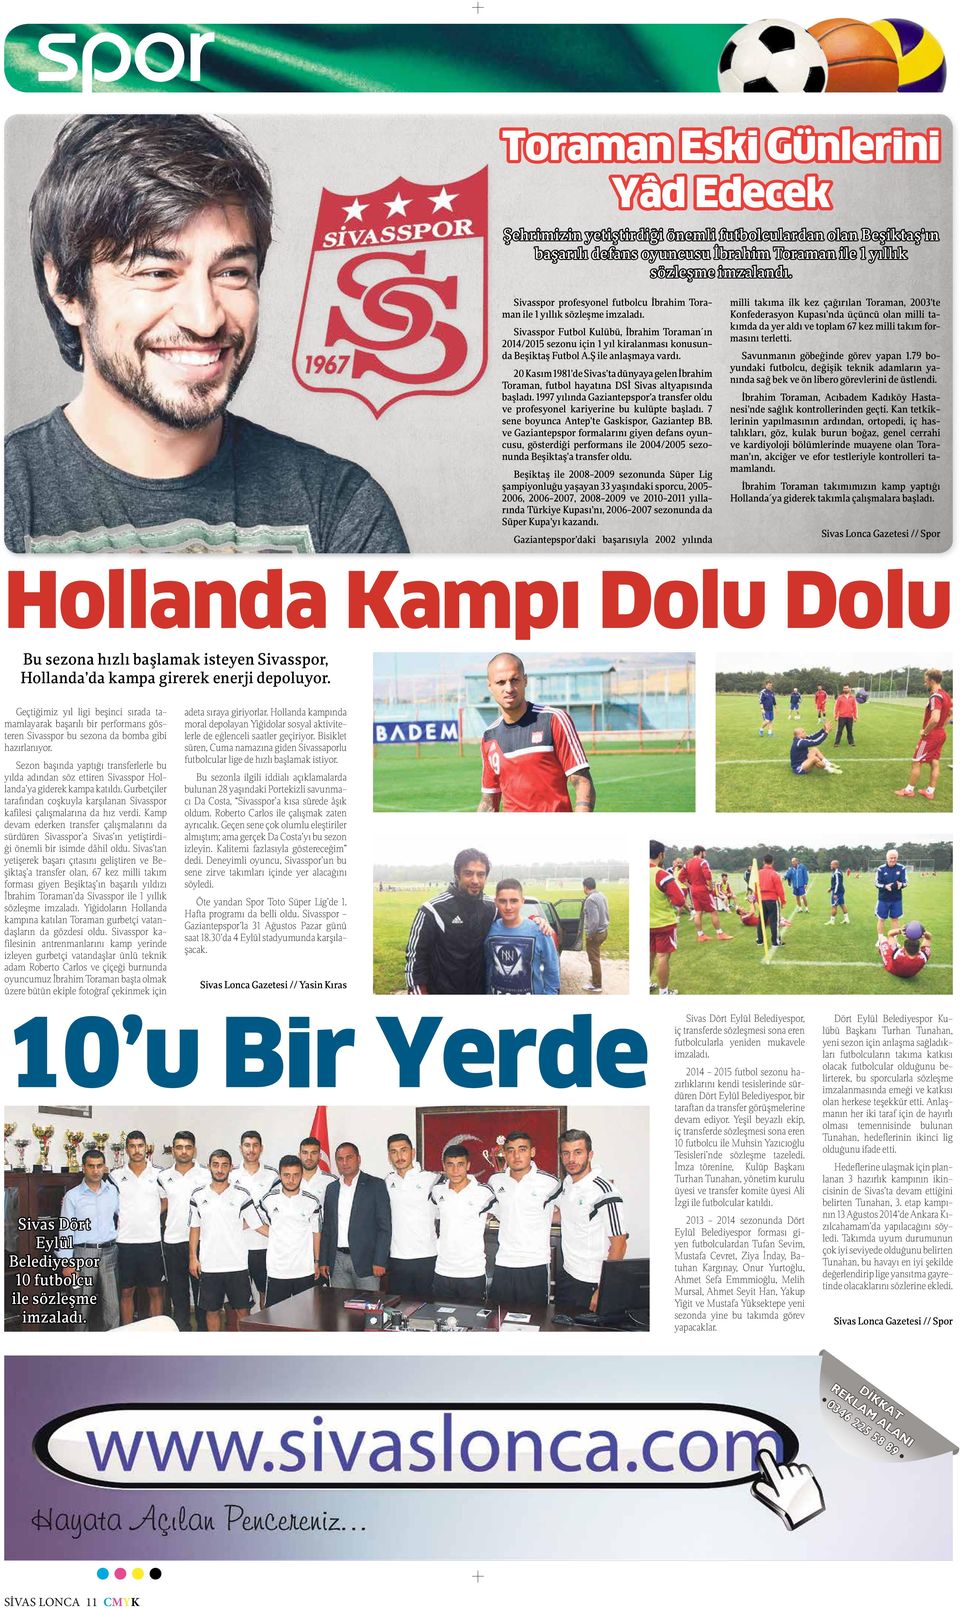 Ş ile anlaşmaya vardı. 20 Kasım 1981 de Sivas ta dünyaya gelen İbrahim Toraman, futbol hayatına DSİ Sivas altyapısında başladı.